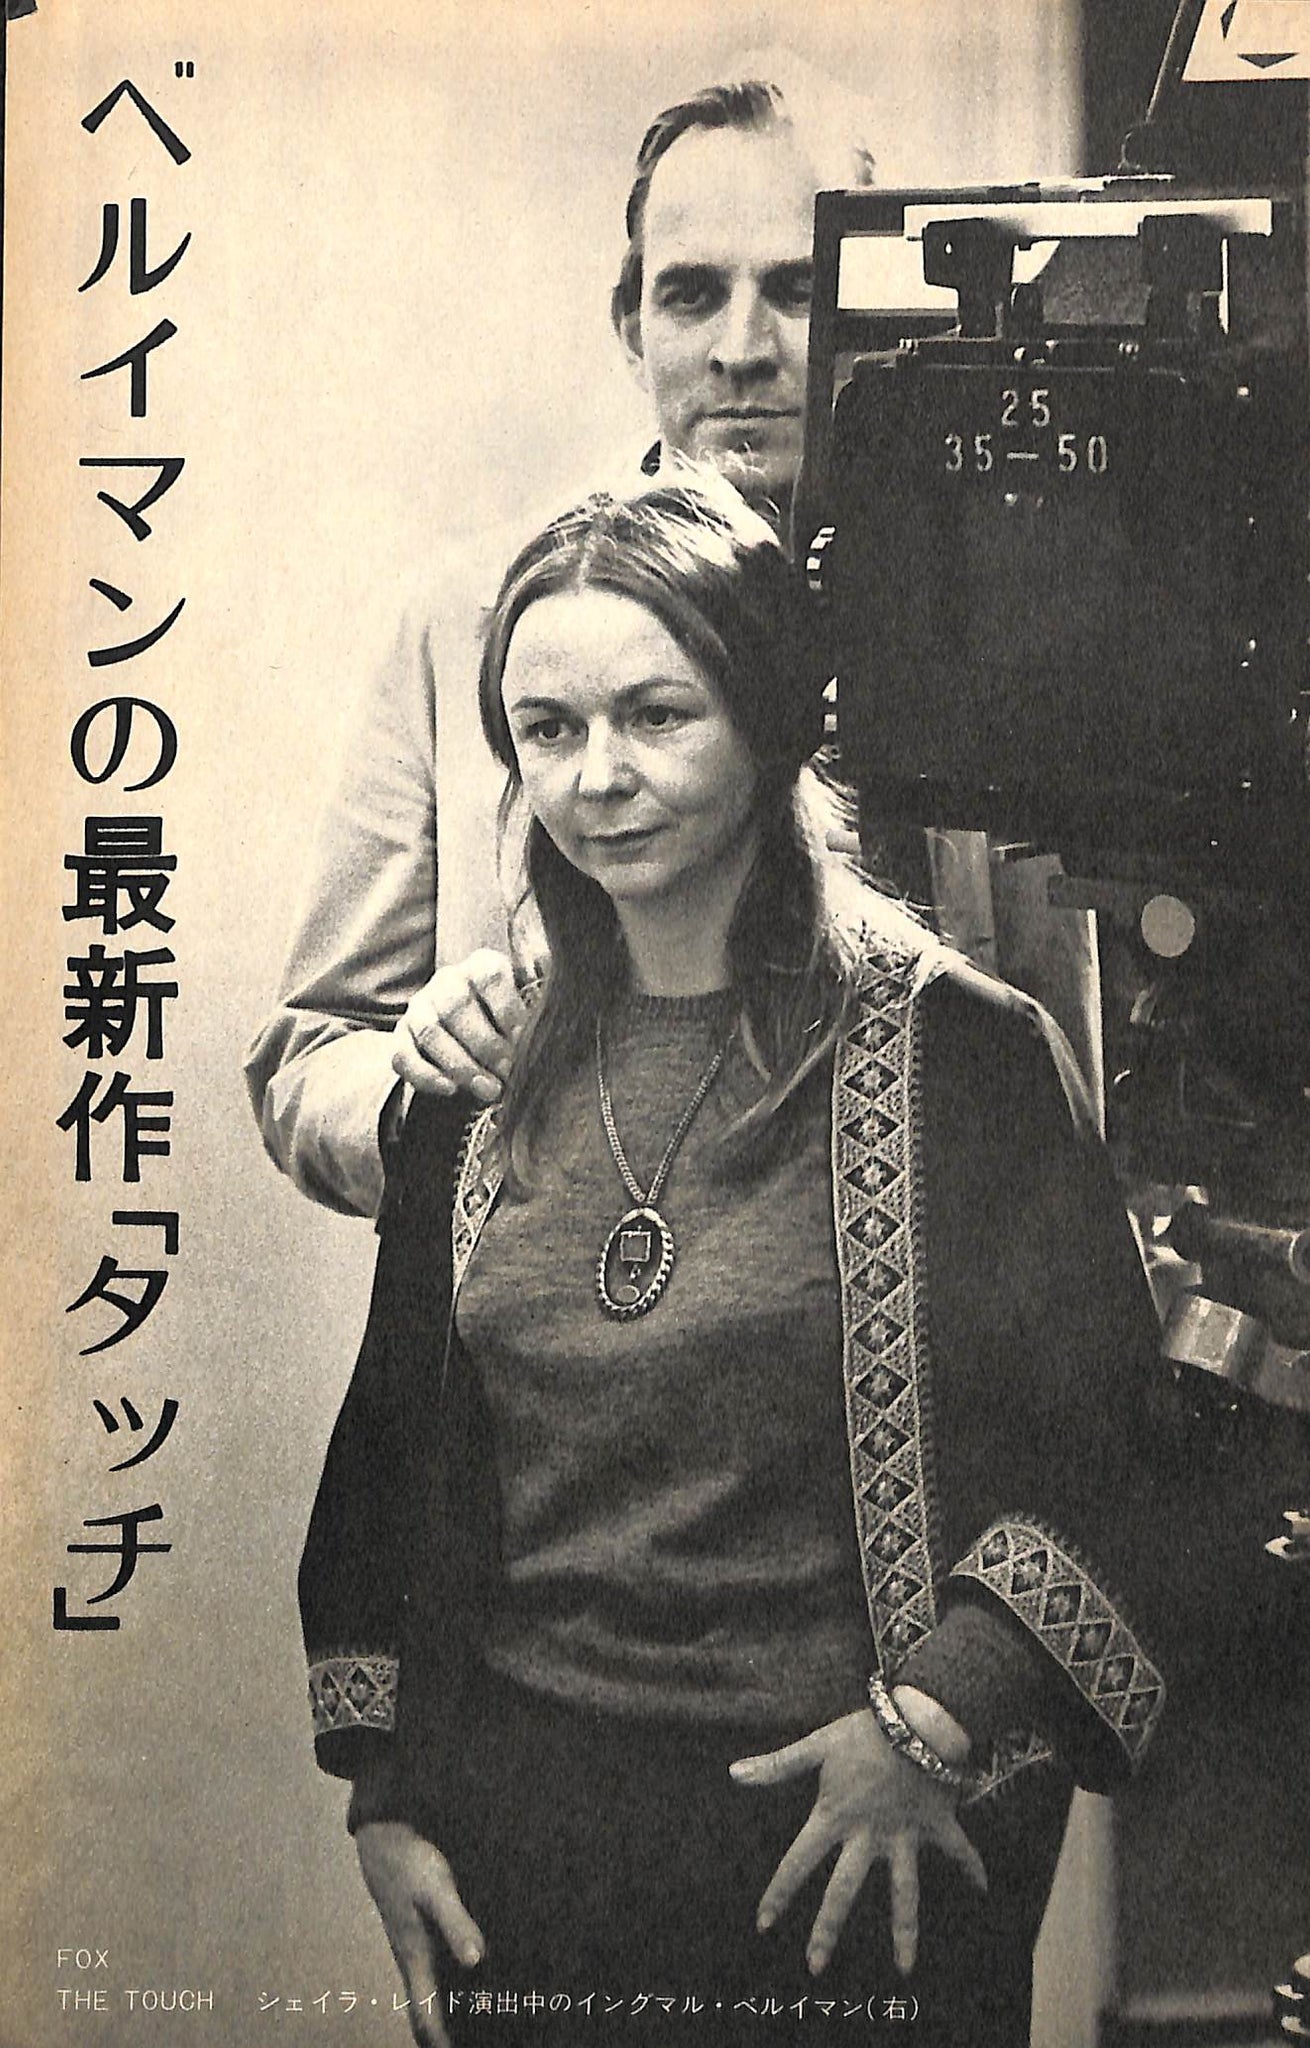 キネマ旬報 1971年6月 下旬号 表紙の映画:愛と死 (栗原小巻) – Books Channel Store